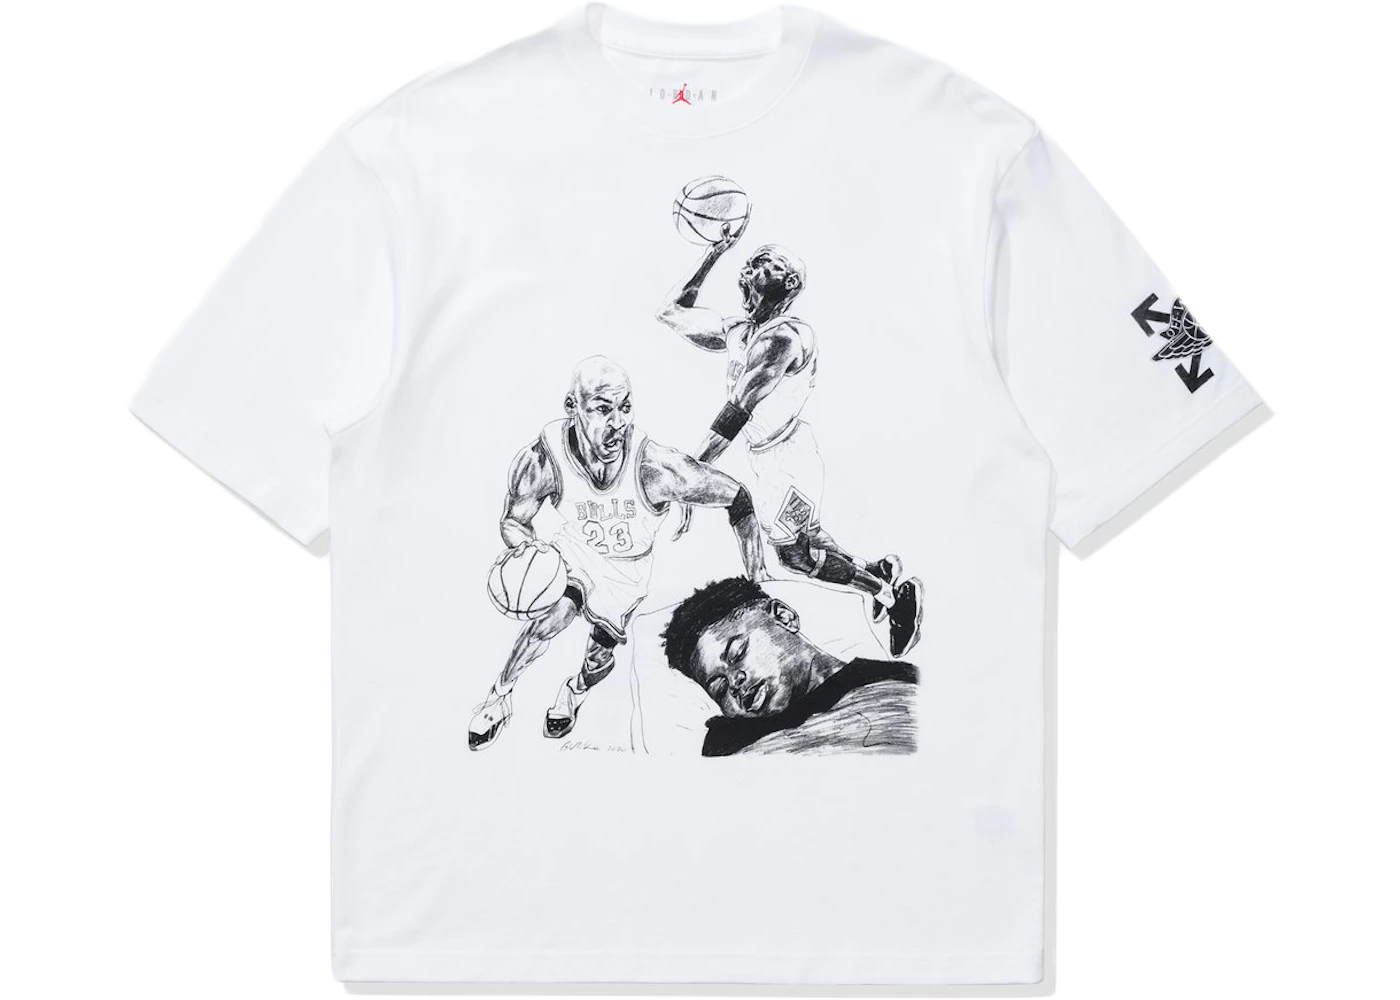 OFF-WHITE x Jordan T-shirt White - SS21 メンズ - JP